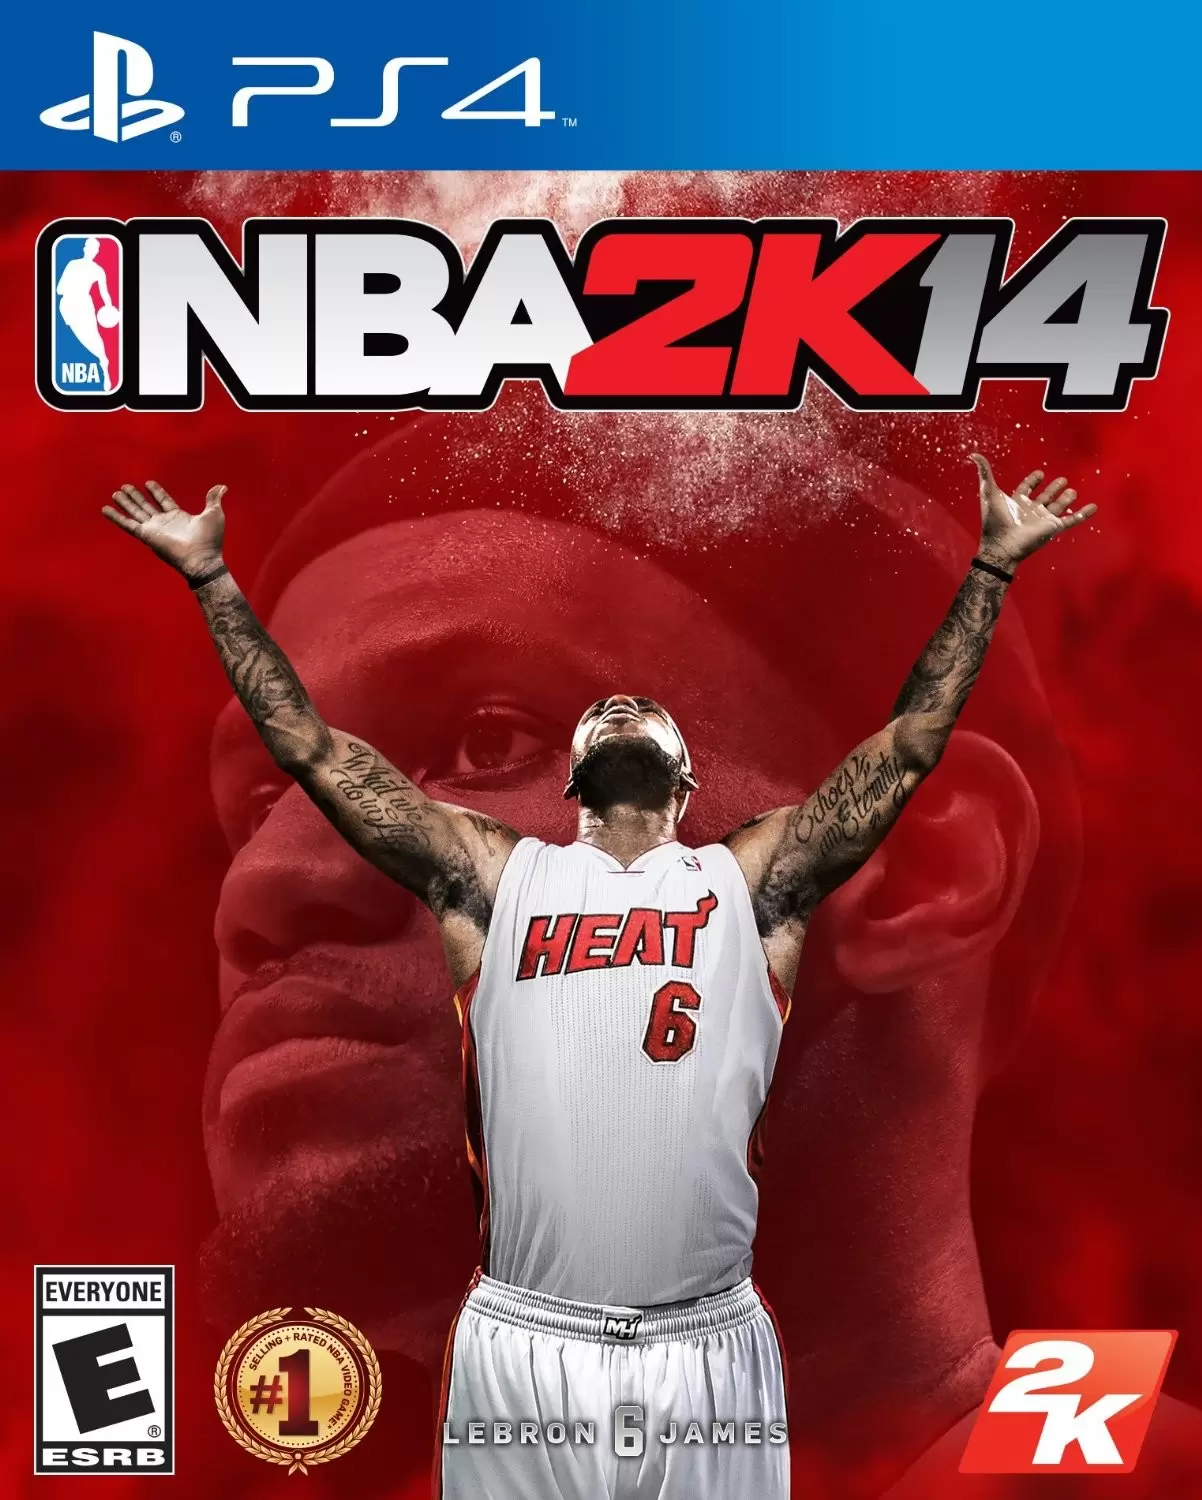 PS4 Games - NBA 2K14